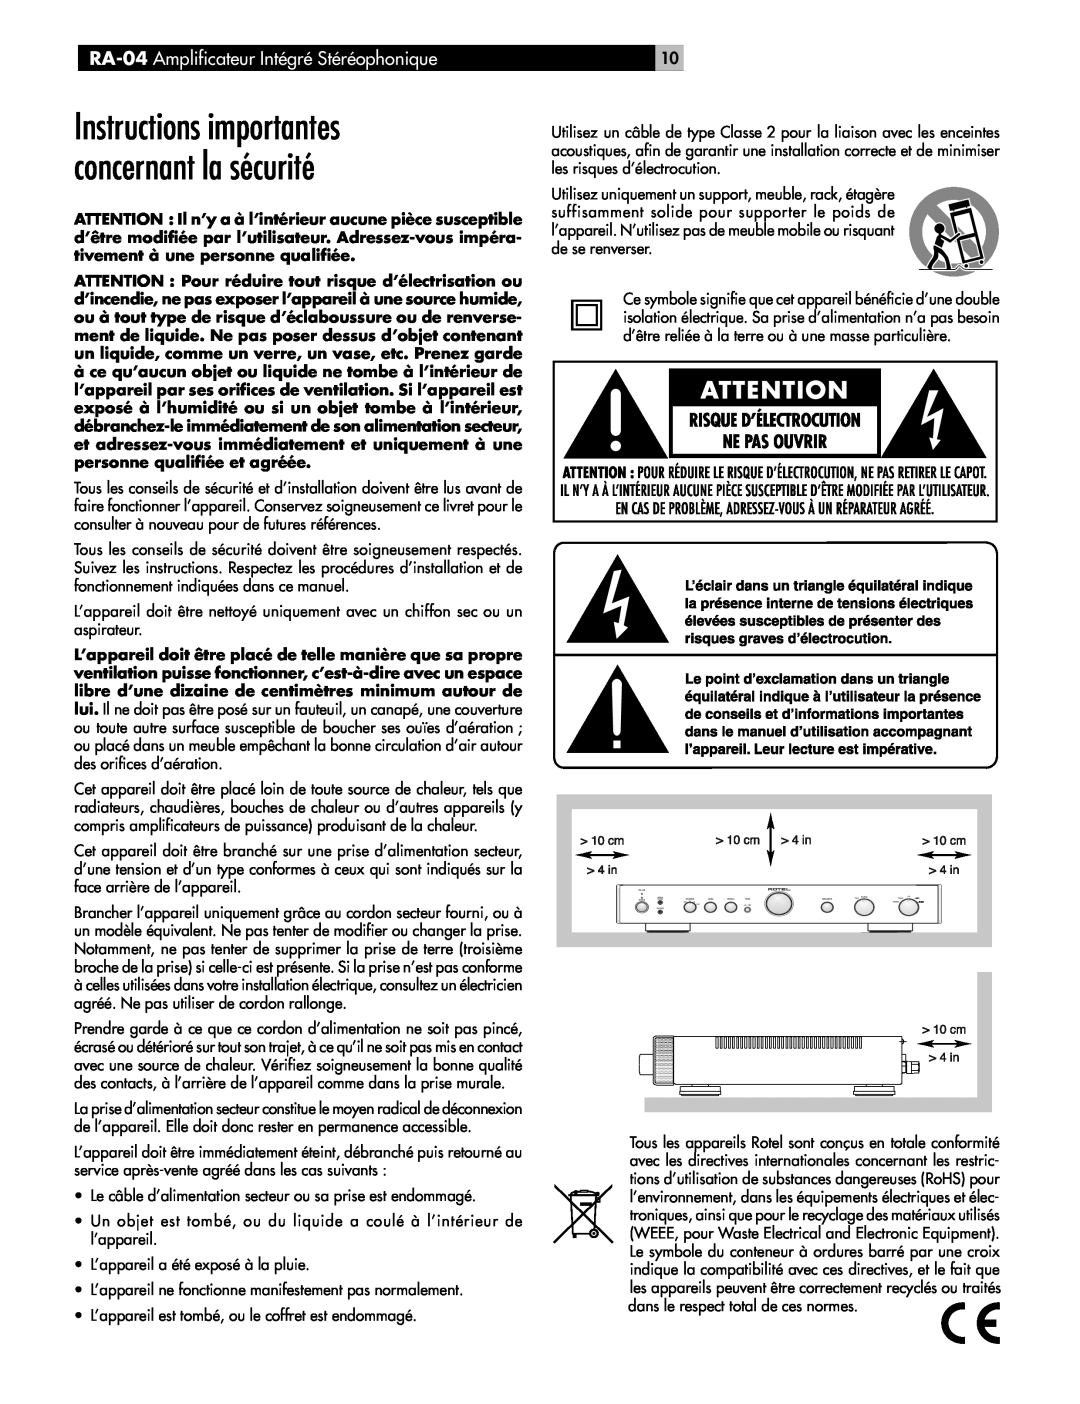 Rotel owner manual Instructions importantes concernant la sécurité, RA-04 Amplificateur Intégré Stéréophonique 